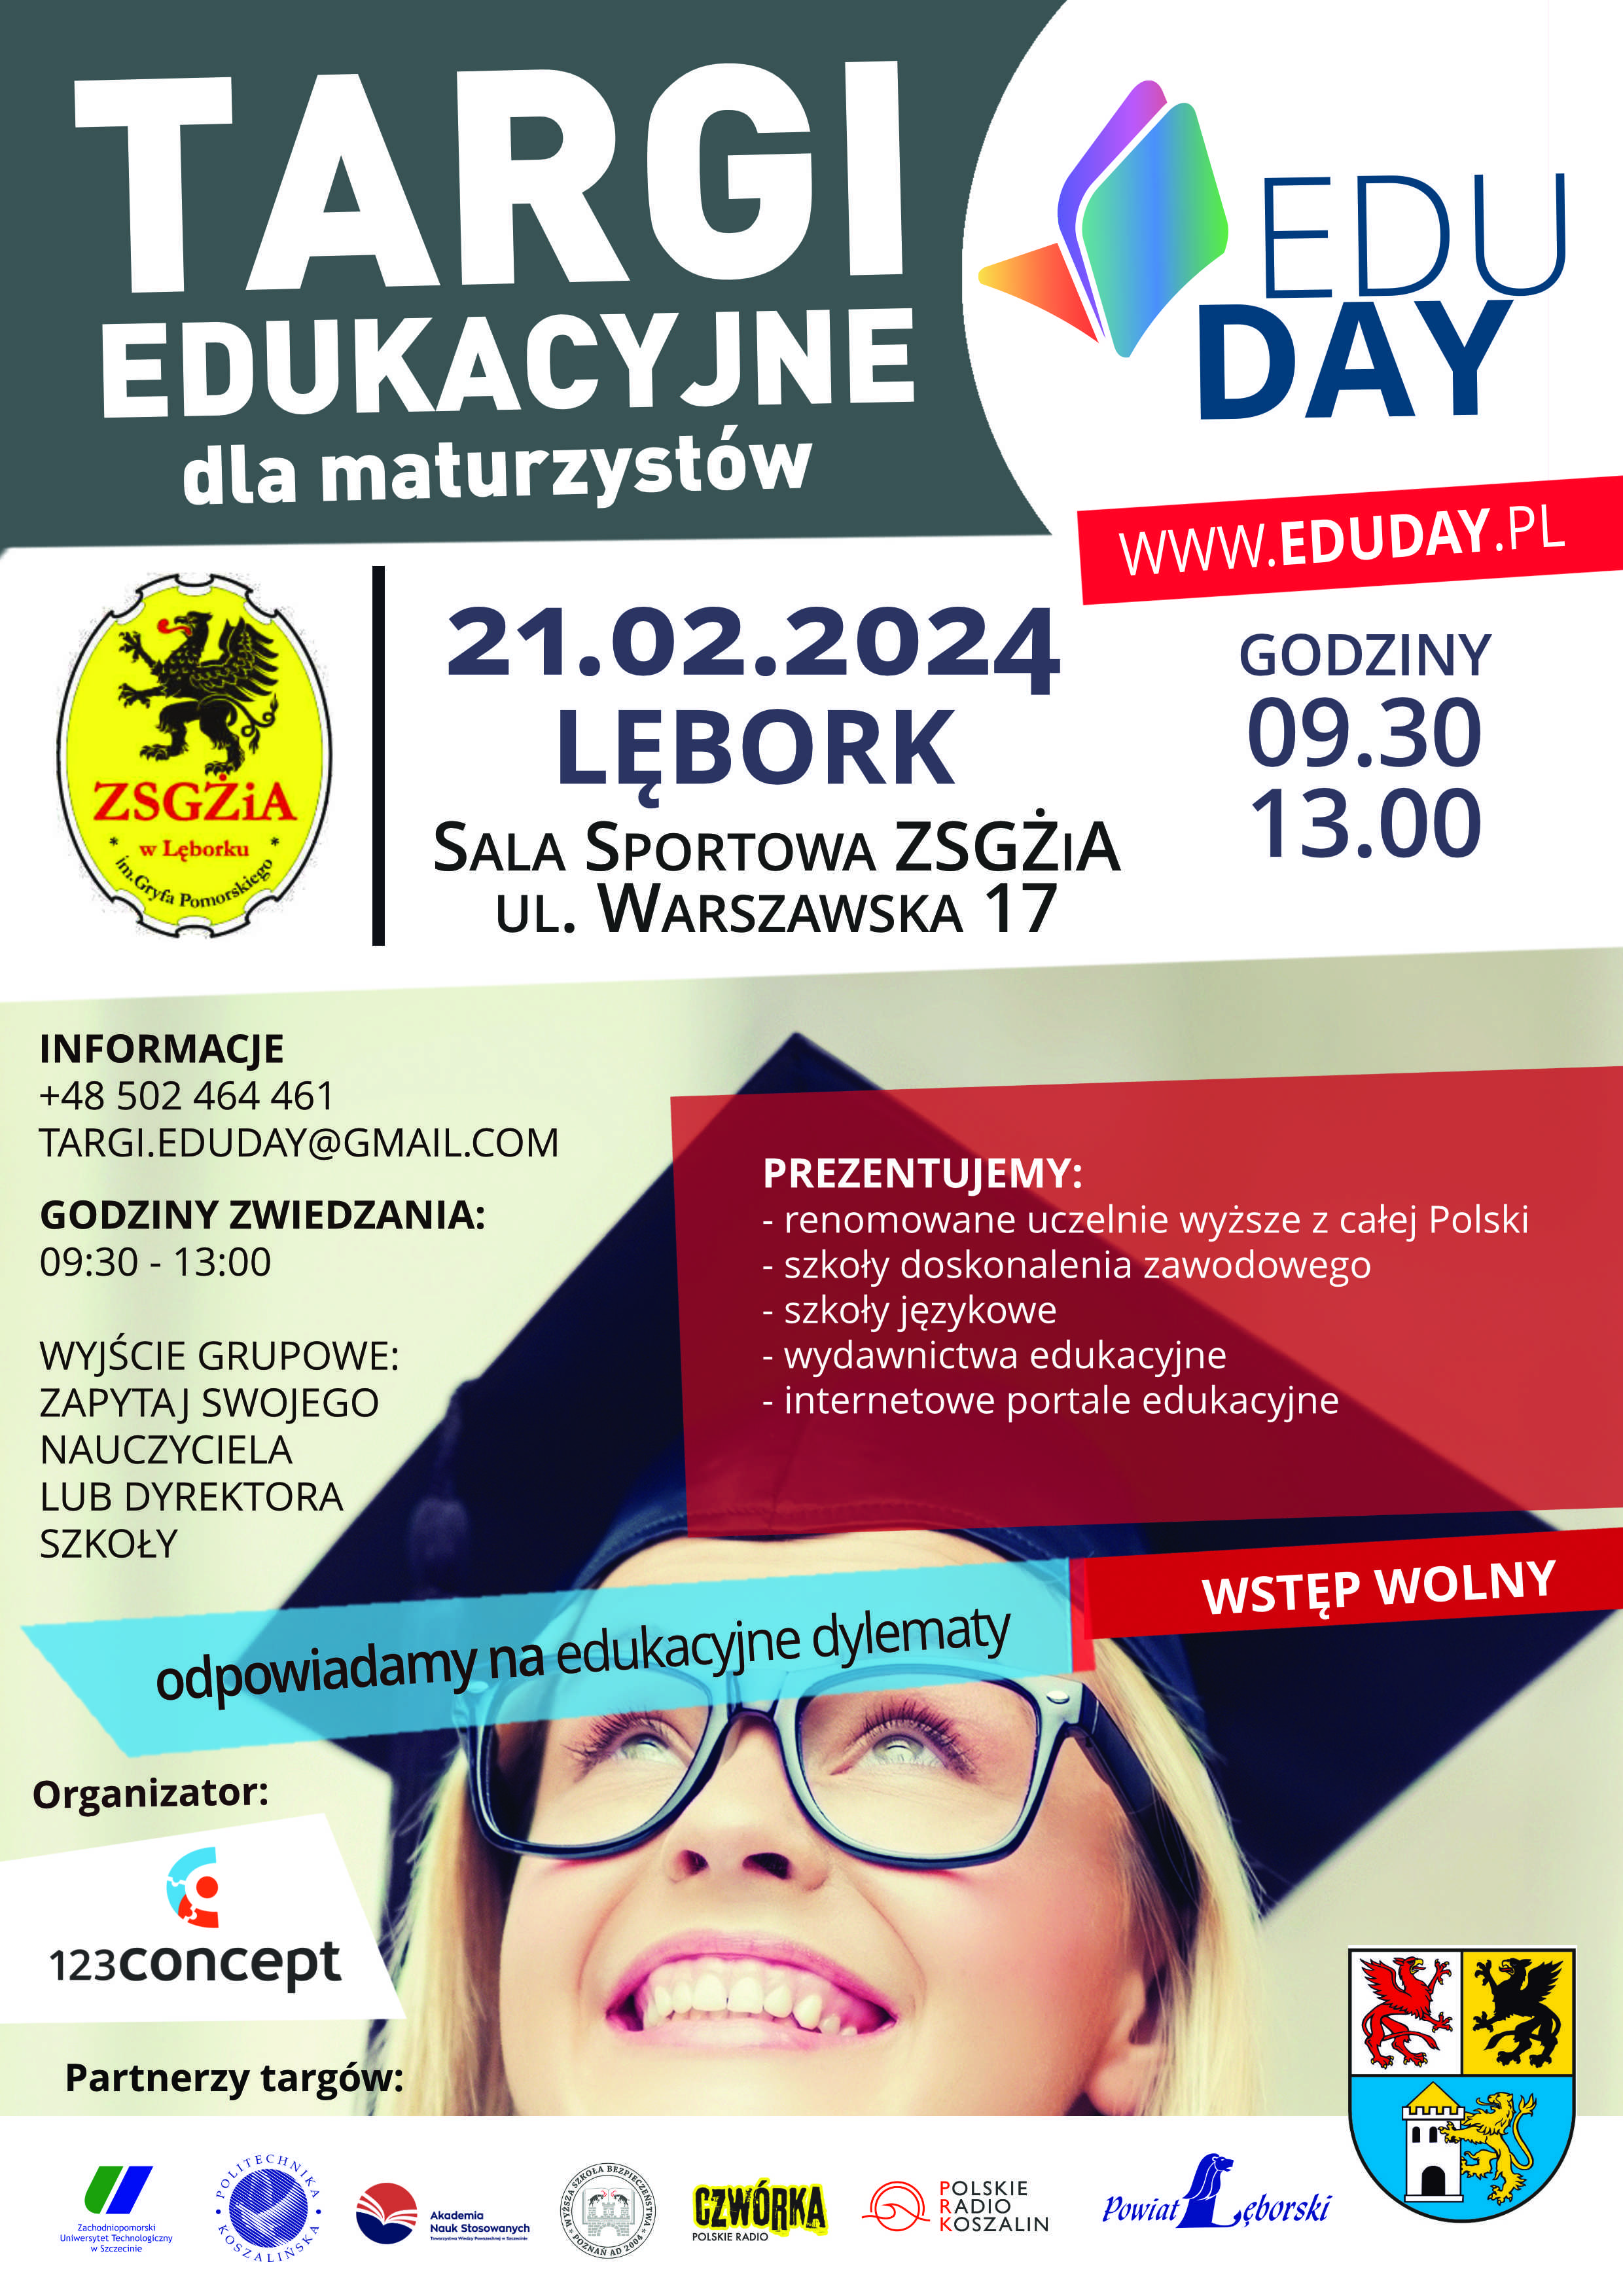 Plakat promujący targi edukacyjne dla maturzystów, które odbędą się w Lęborku w Sali Sportowej ZSGŻiA, ul. Warszawska 17 w godzinach od 9:30 do 13:00